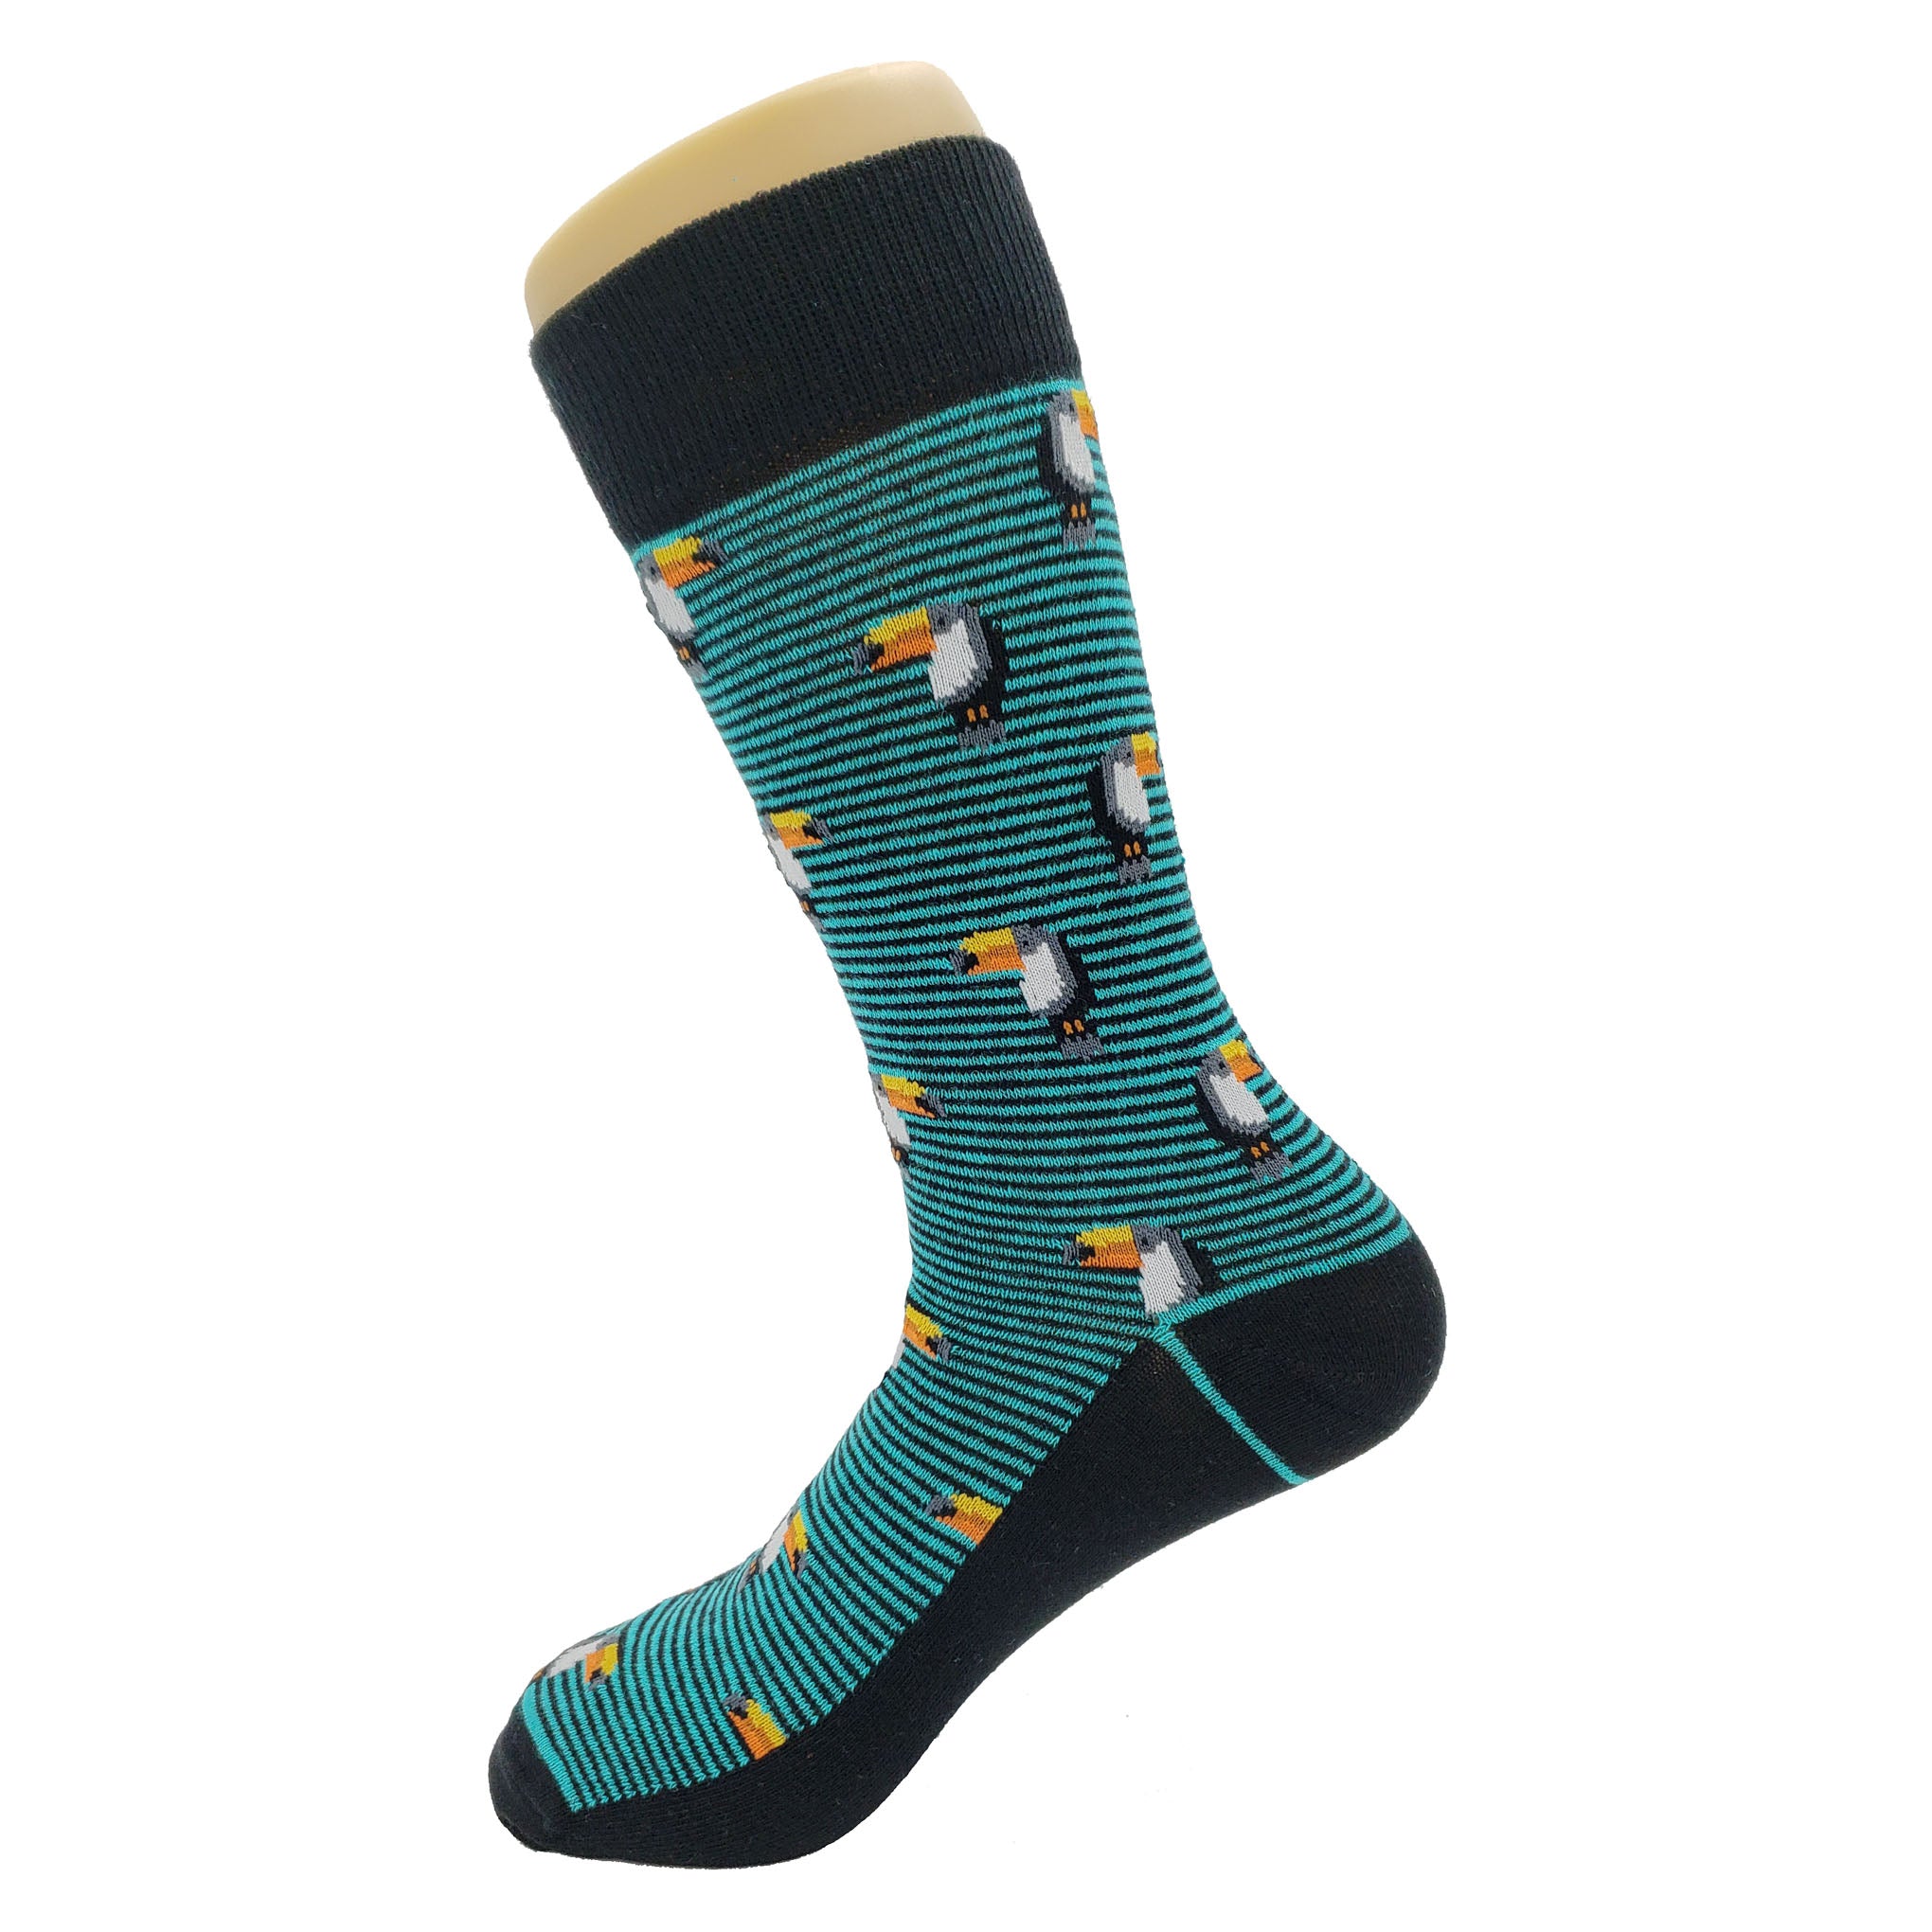 Stripe Toucan Socks - Fun and Crazy Socks at Sockfly.com